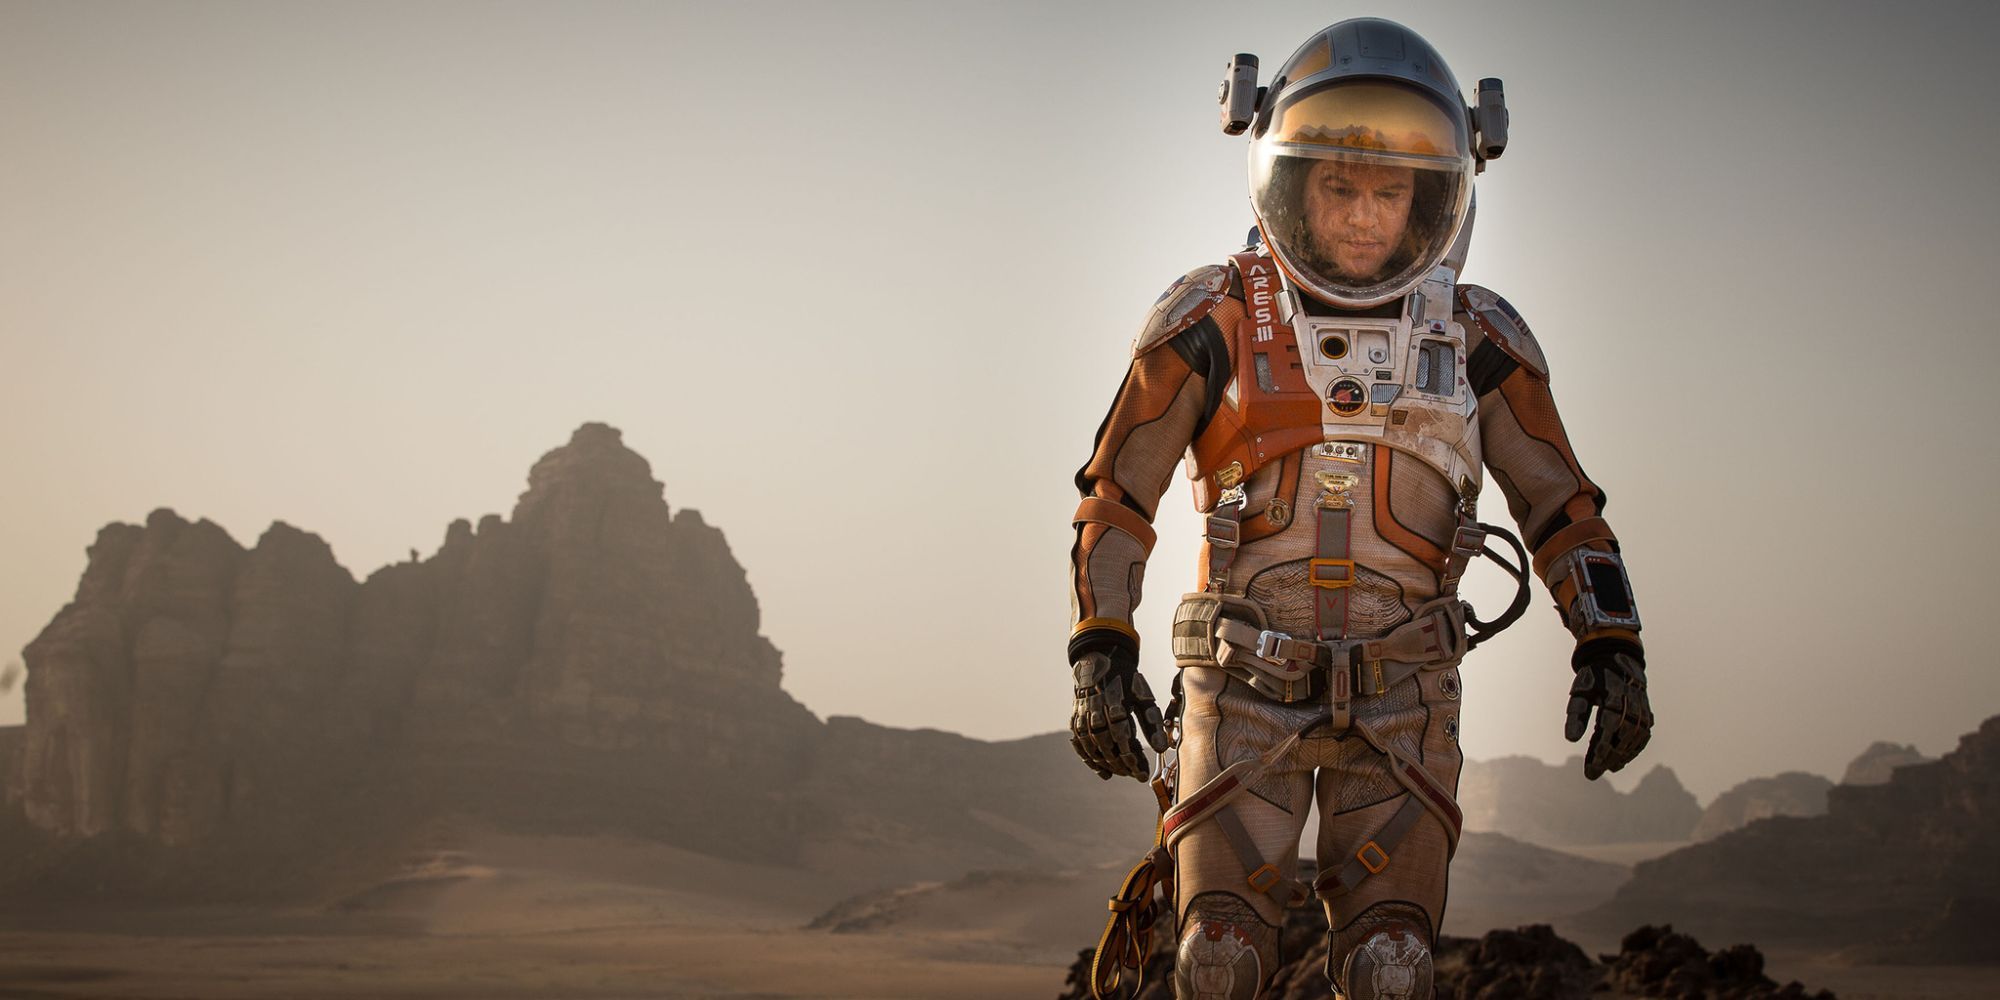 Matt Damon as Mark Watney wearing a space suit on Mars in The Martian.